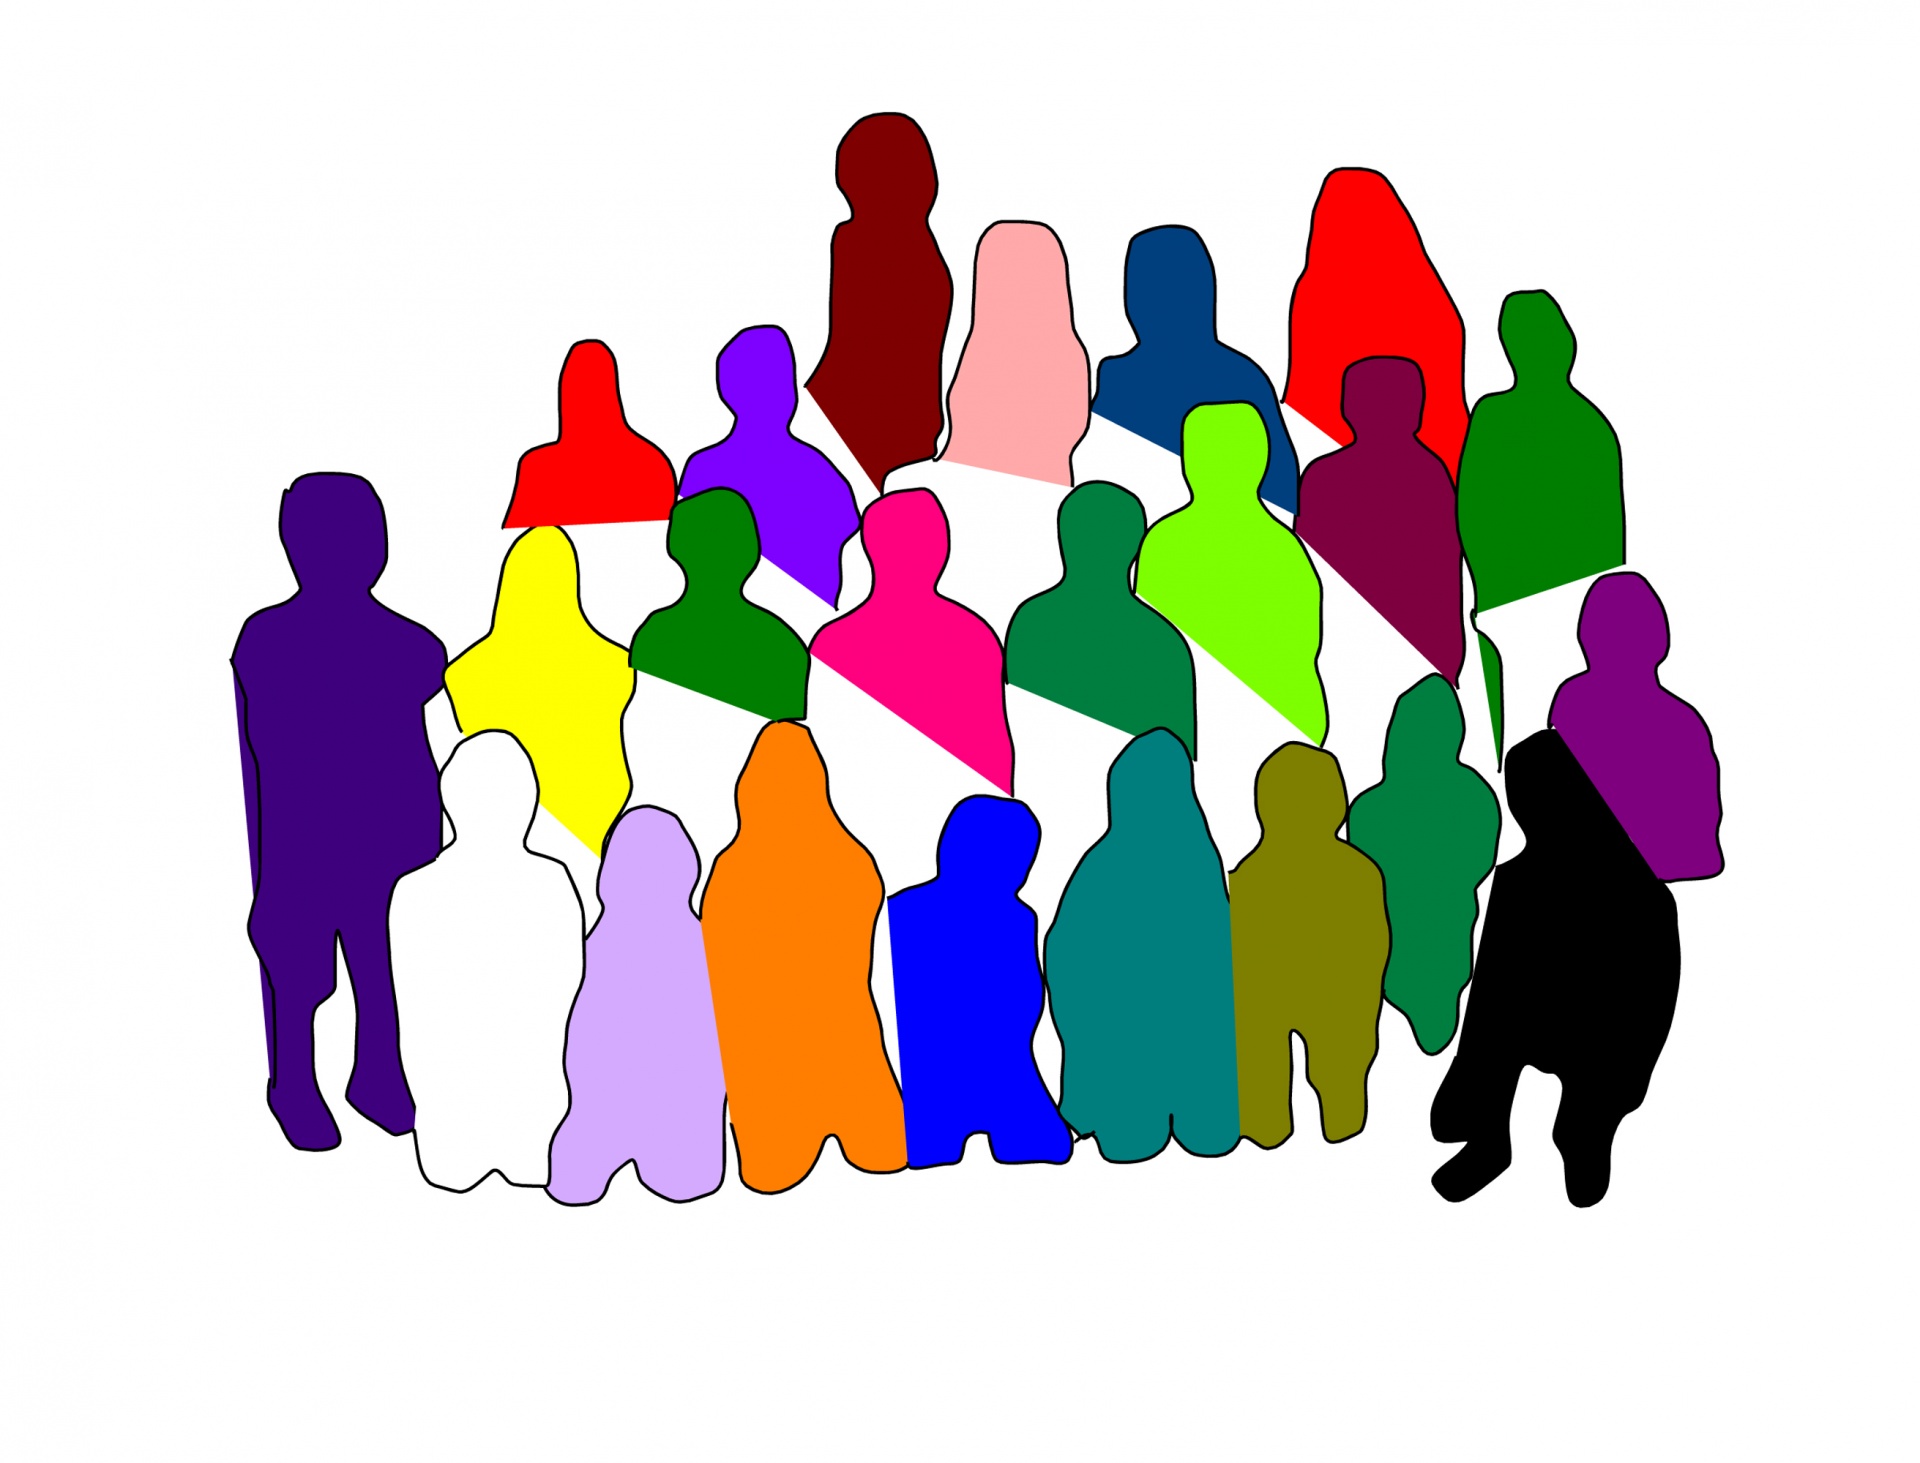 Social society. Группа людей. Социальные группы людей. Социальные группы иллюстрация. Группы людей в обществе.